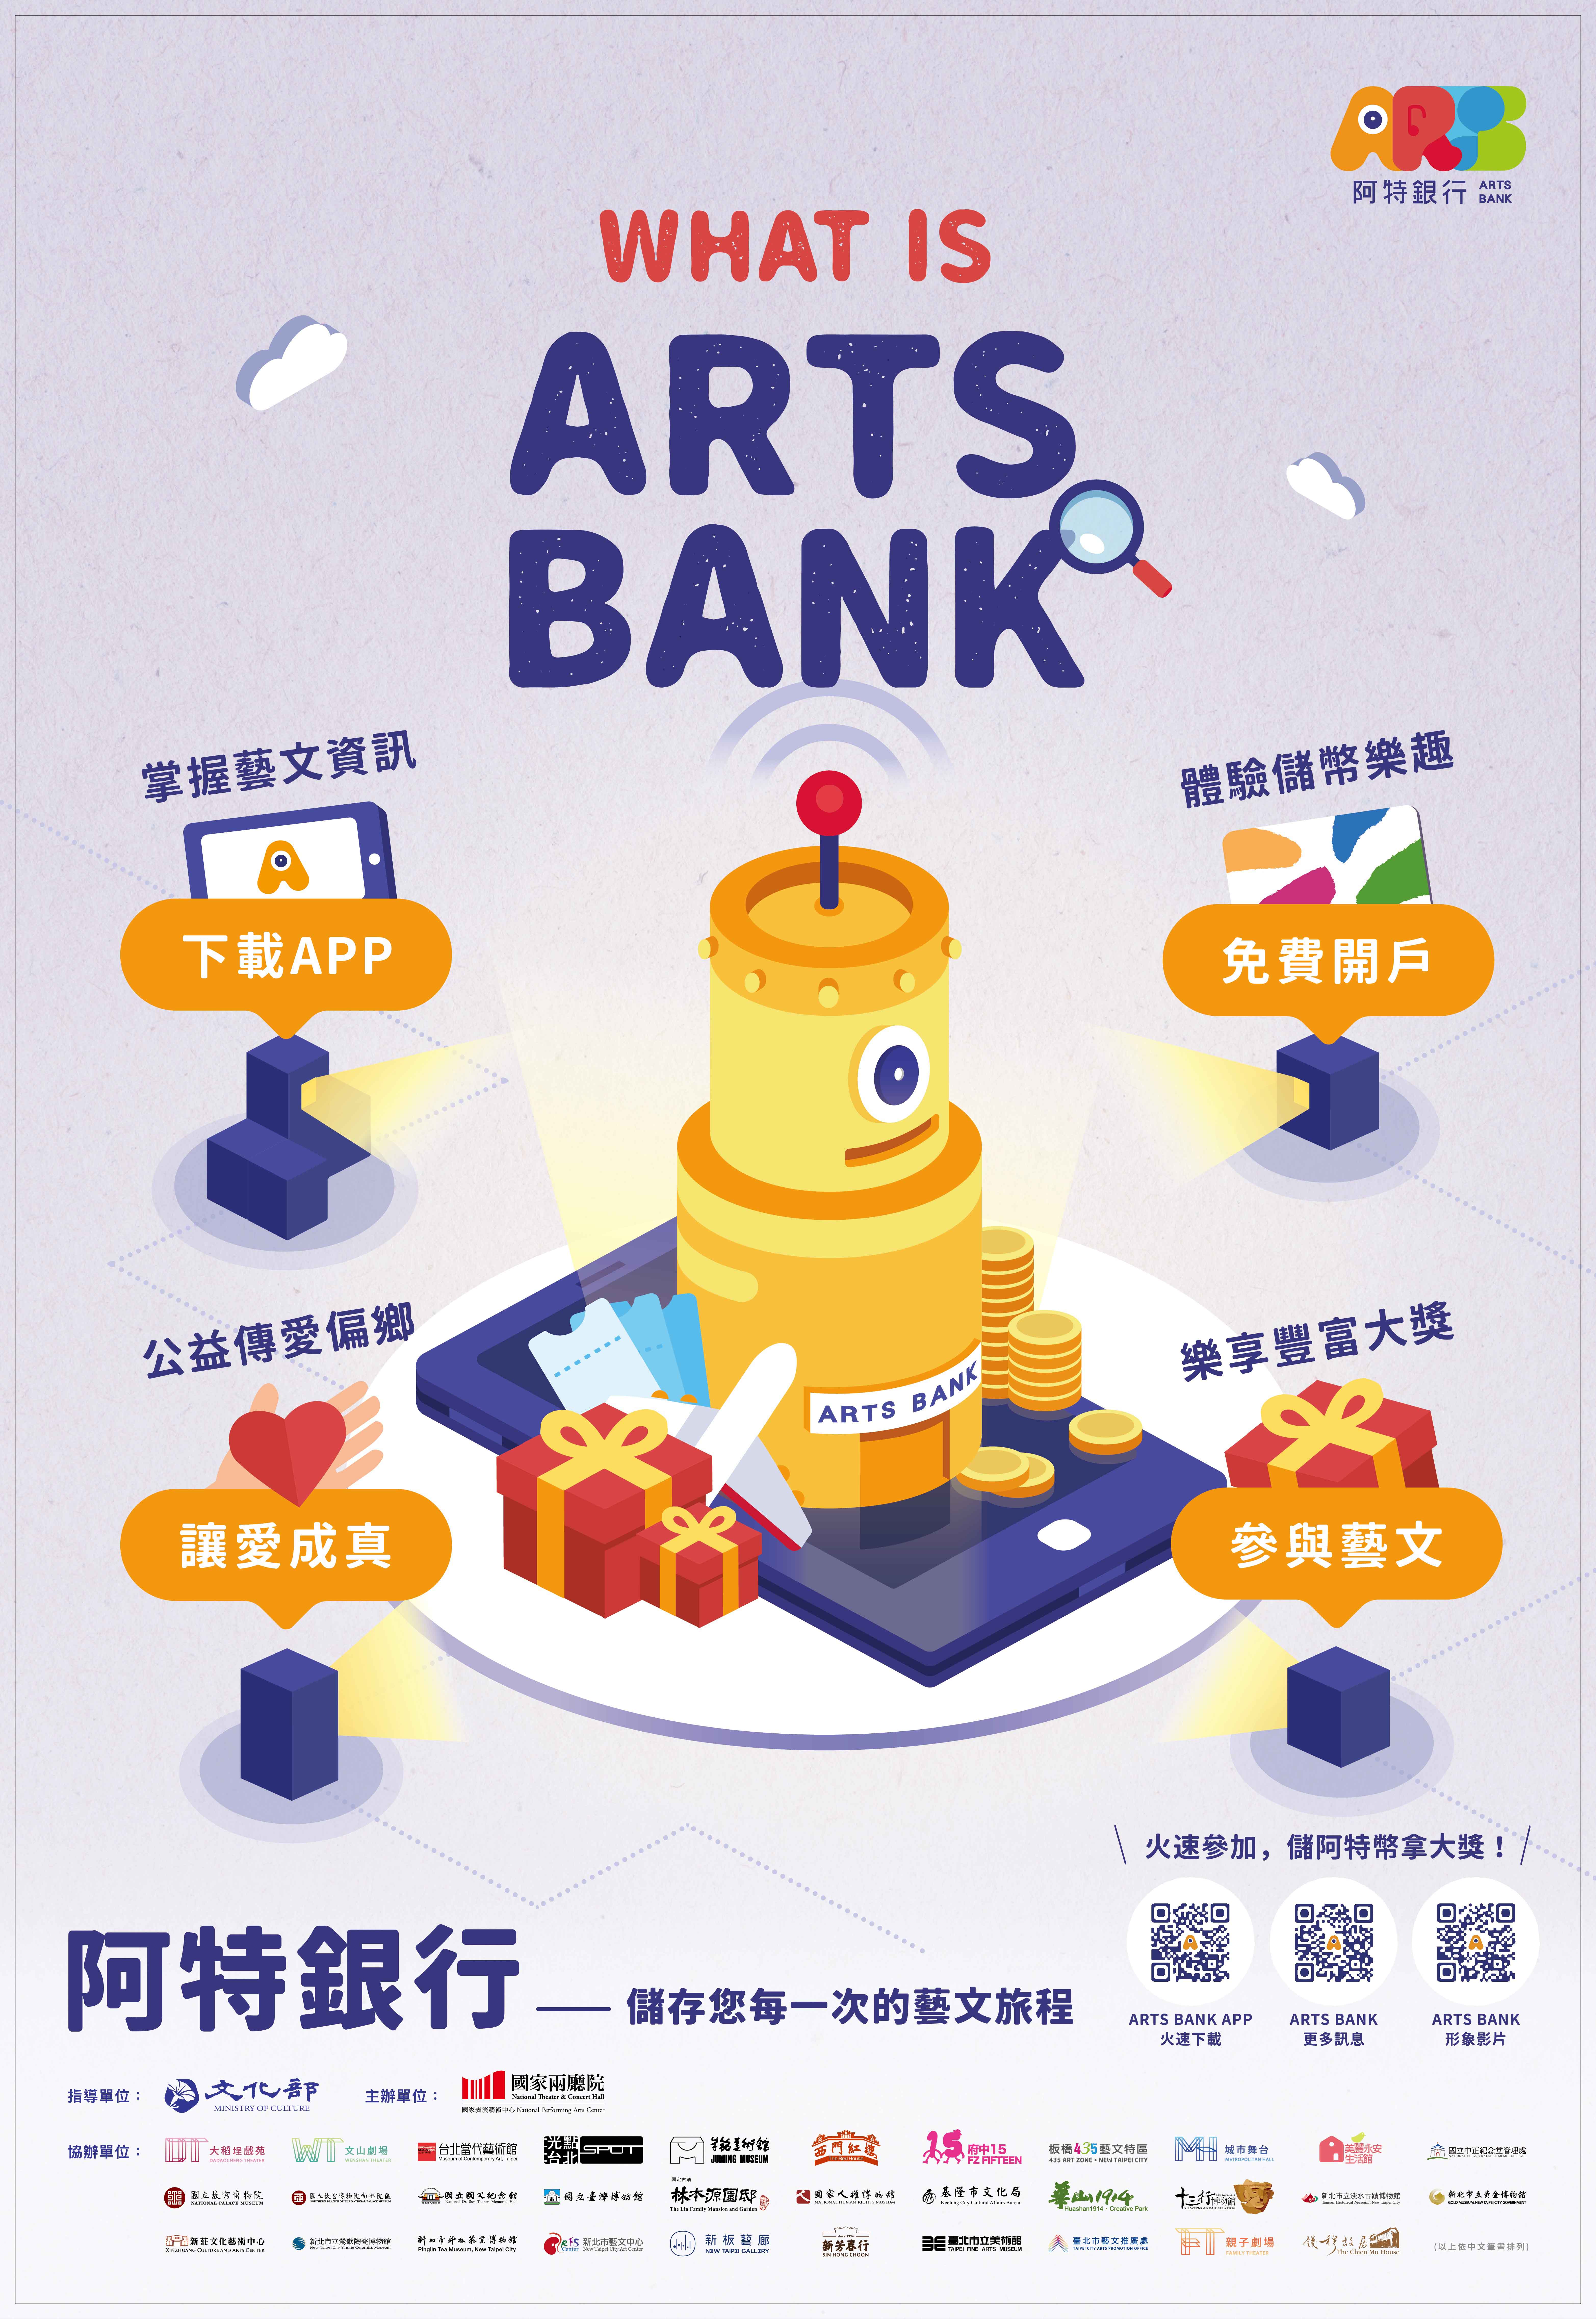 「阿特銀行 Arts Bank」儲存你的藝文旅程 豐富你的藝趣人生